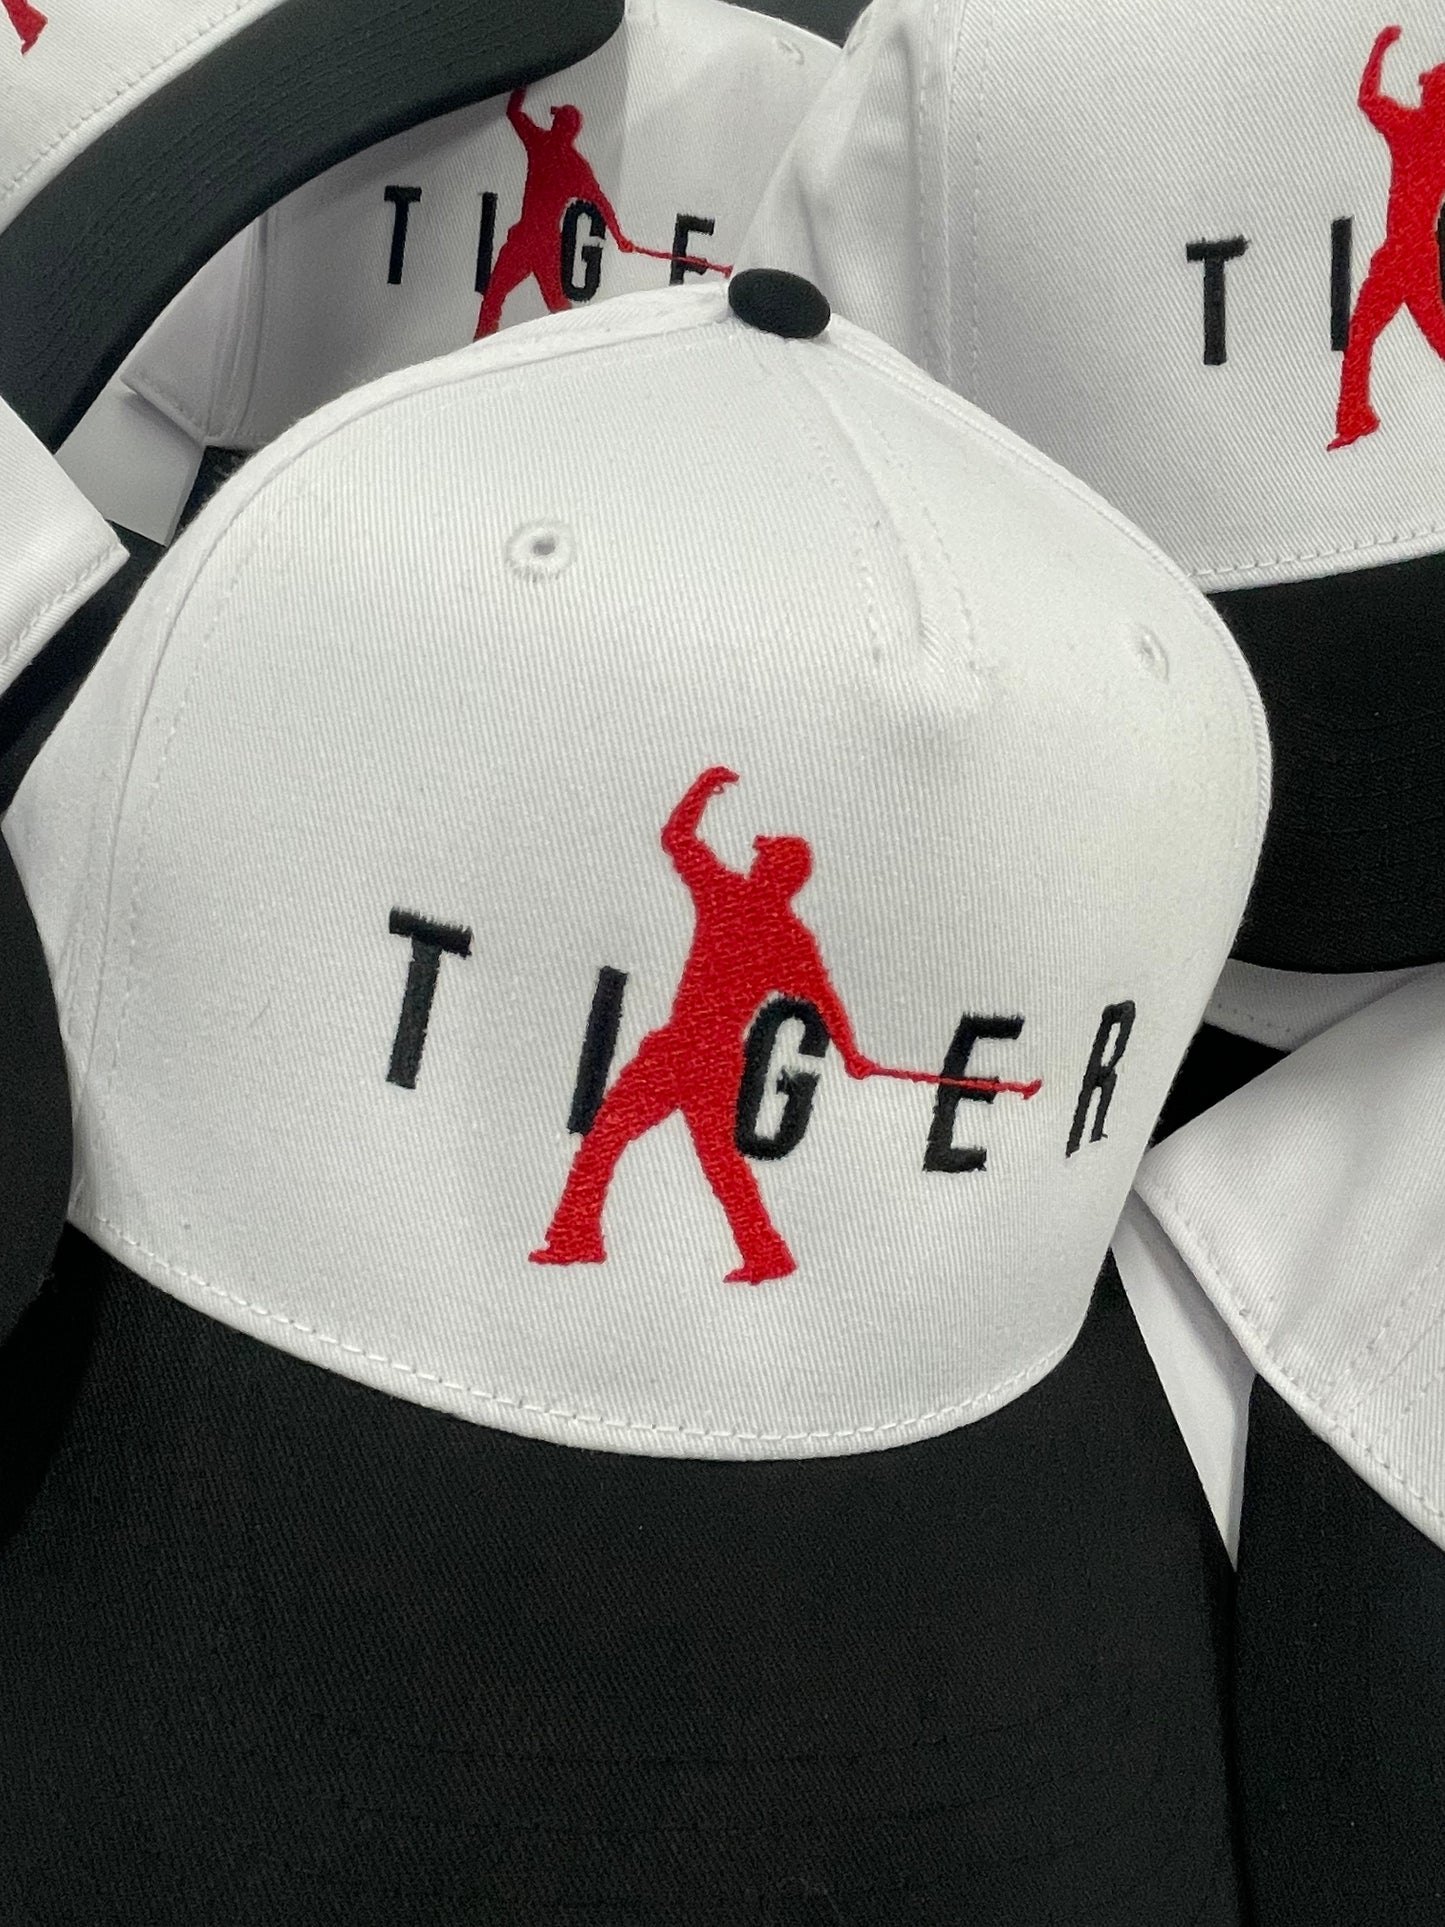 VINTAGE TIGER REIMAGINED SNAPBACK HAT - WHITE/BLACK/RED